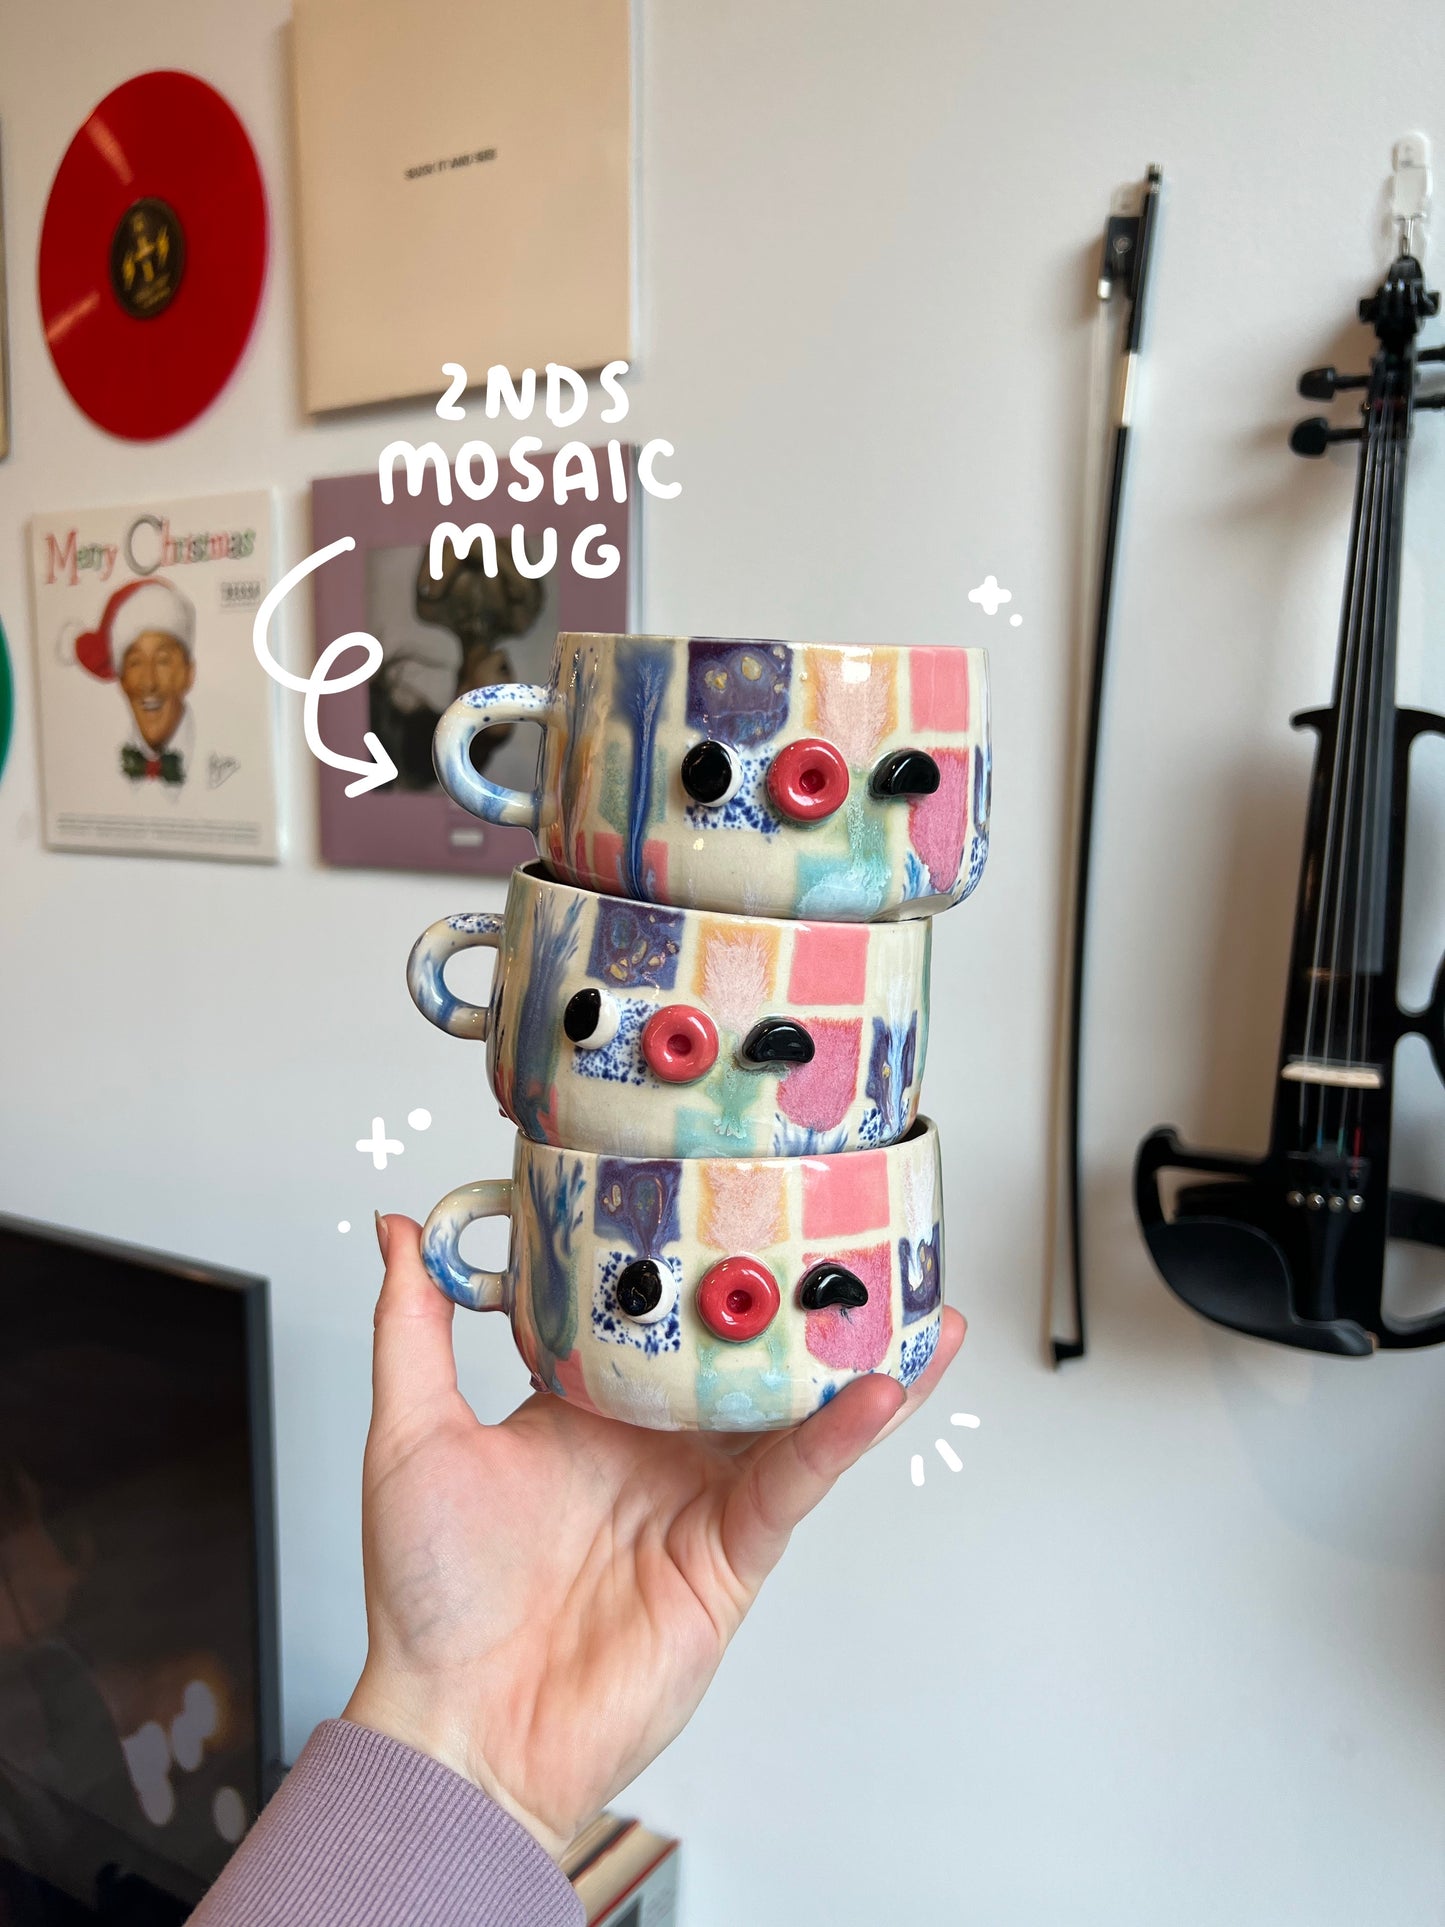 Seconds Mosaic mugs